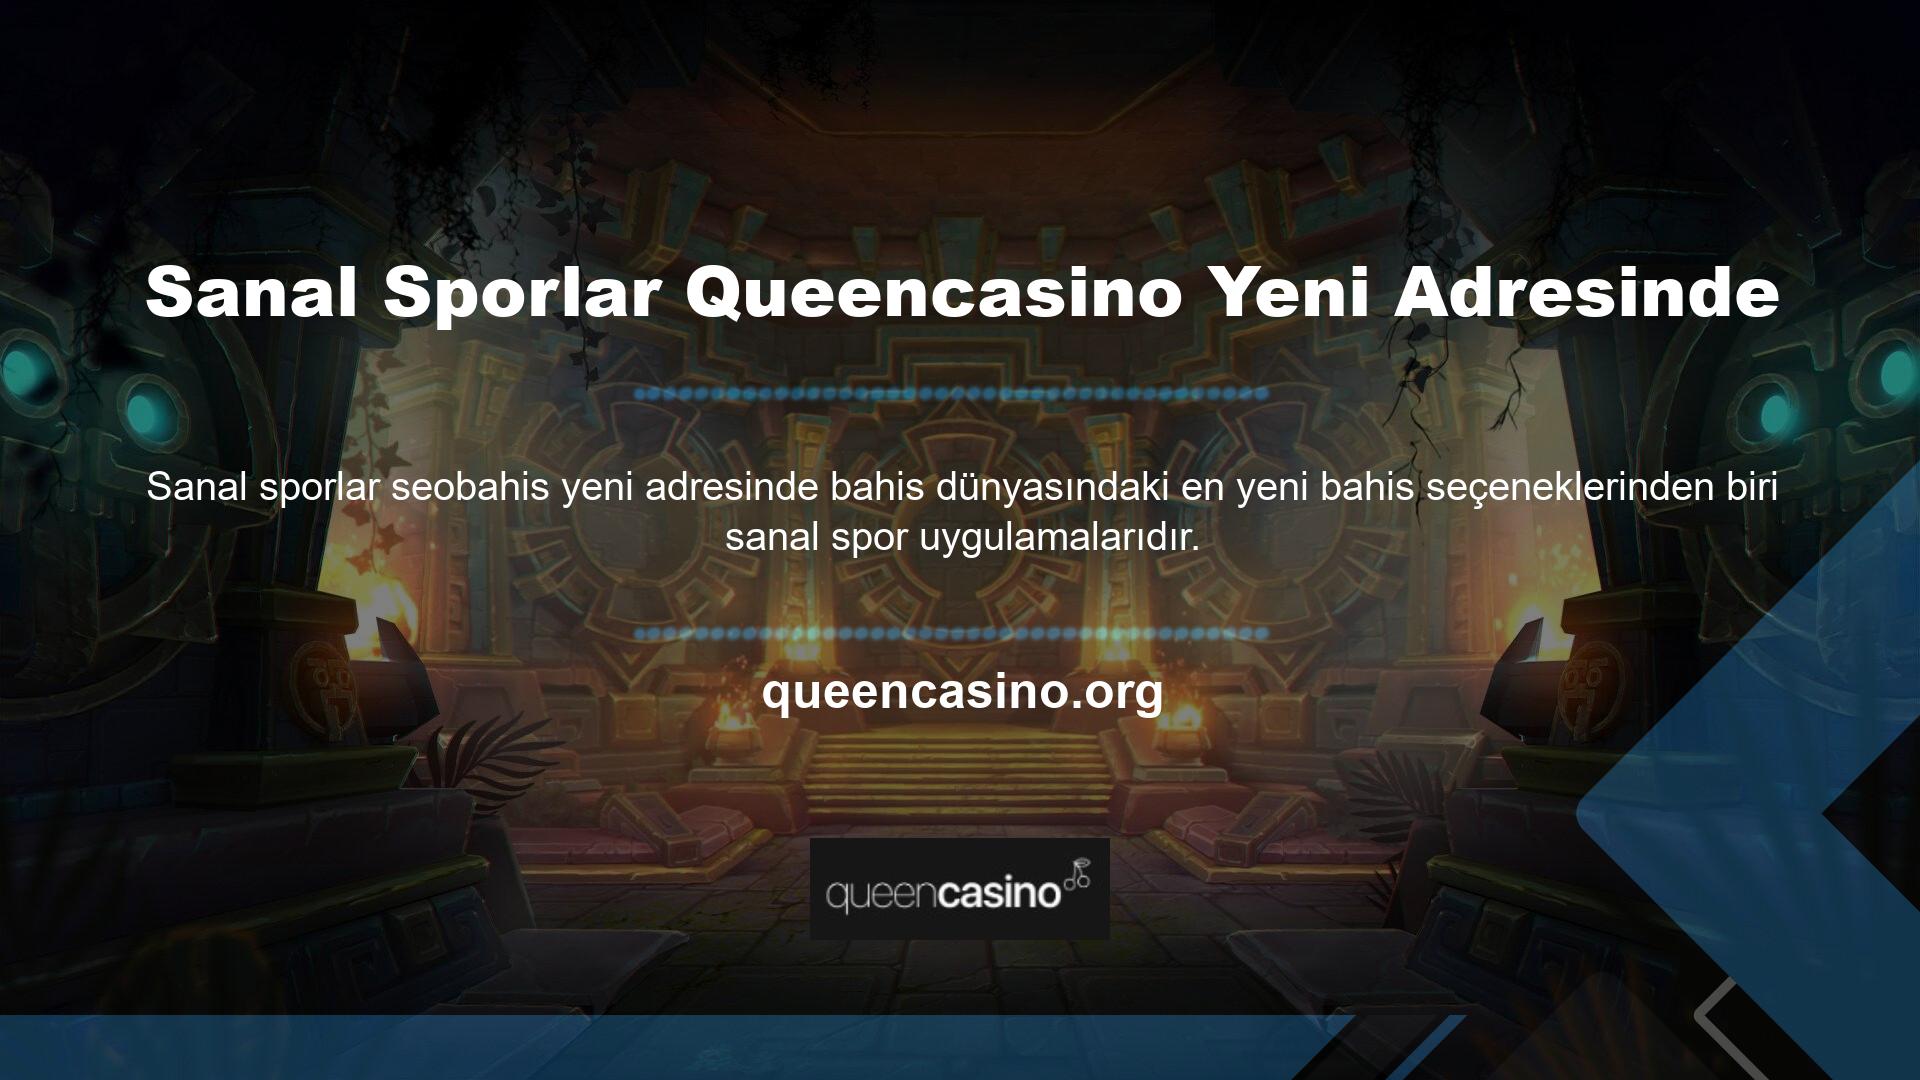 Queencasino yeni adresi sanal sporlara ayrılmış geniş bir spor arşivine ev sahipliği yapıyor